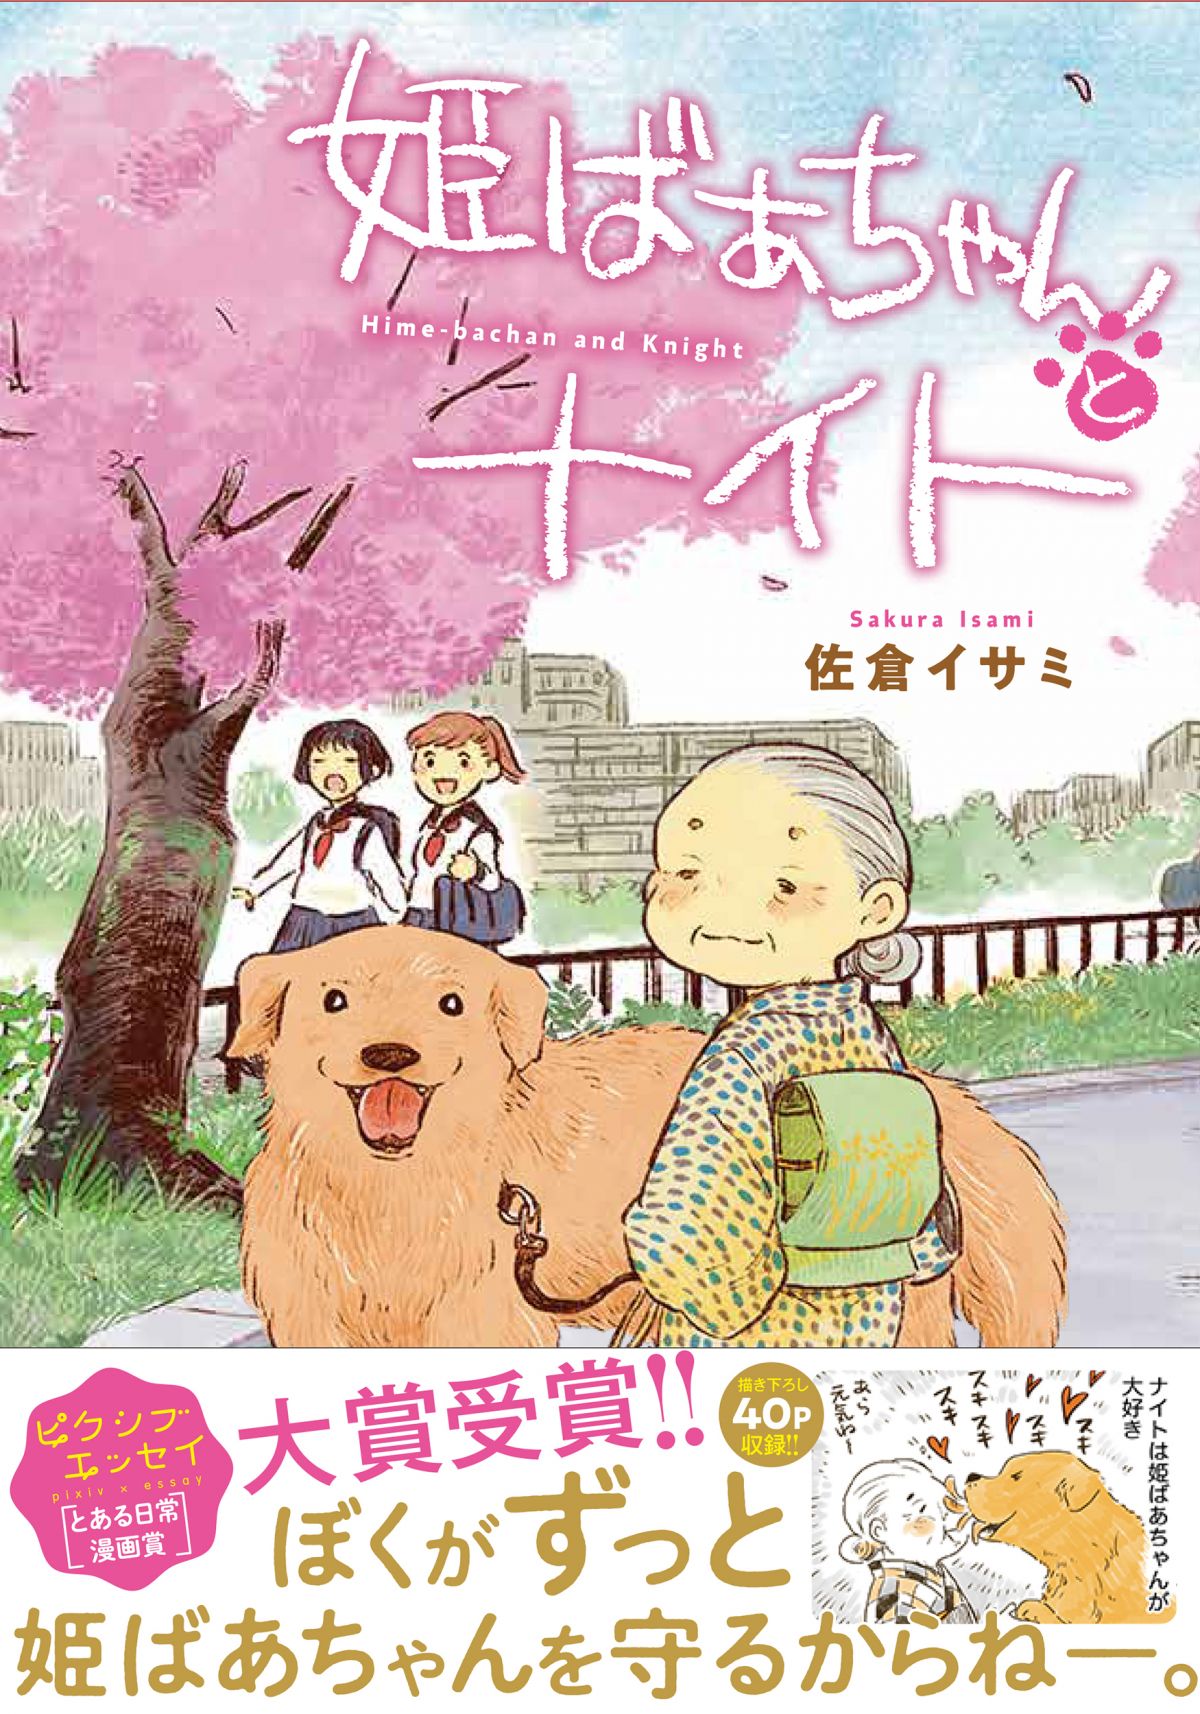 動物愛が炸裂 人気動物漫画家 佐倉イサミさんと類さんが語る 小さな家族 を描く意味 ダ ヴィンチニュース